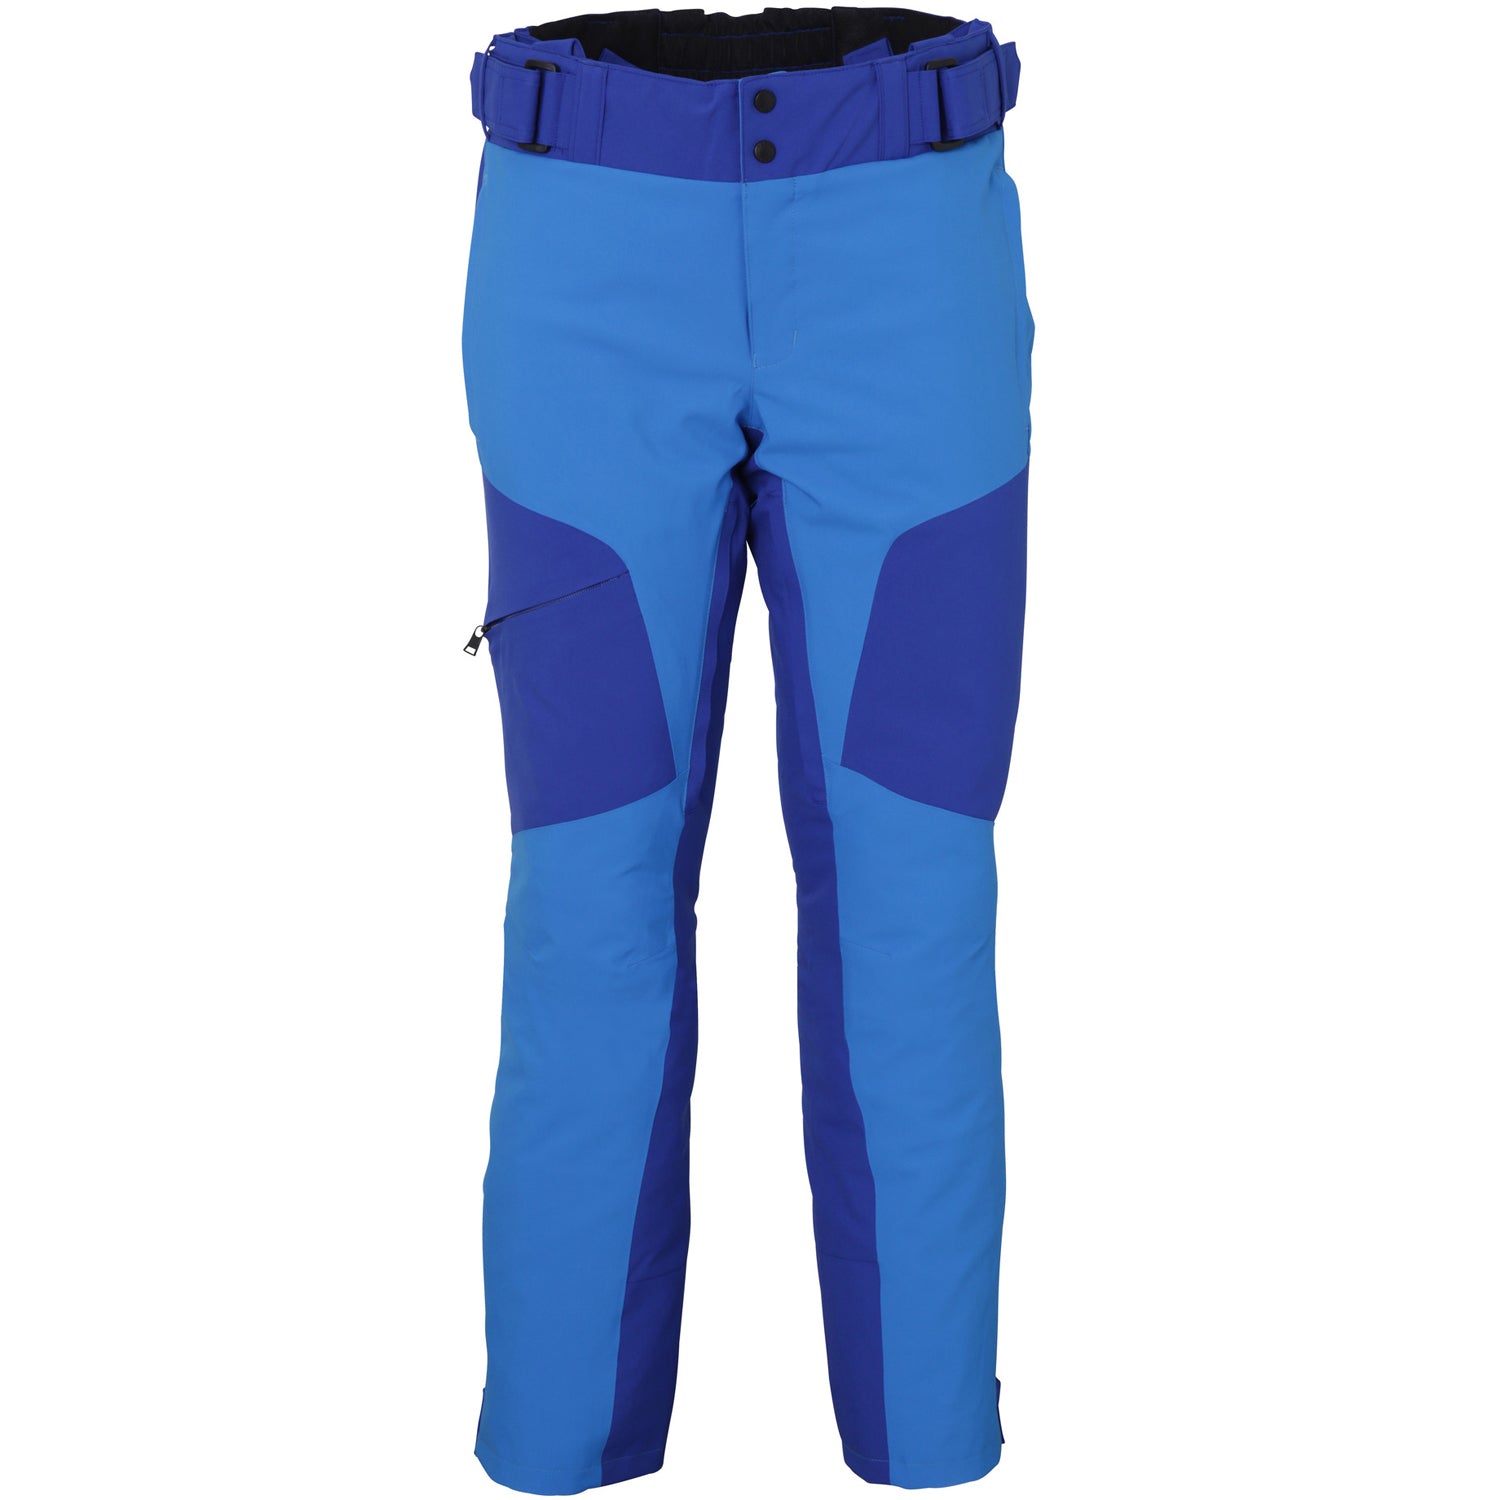 Phenix Slope Ski Pant 2020 Royal Blue